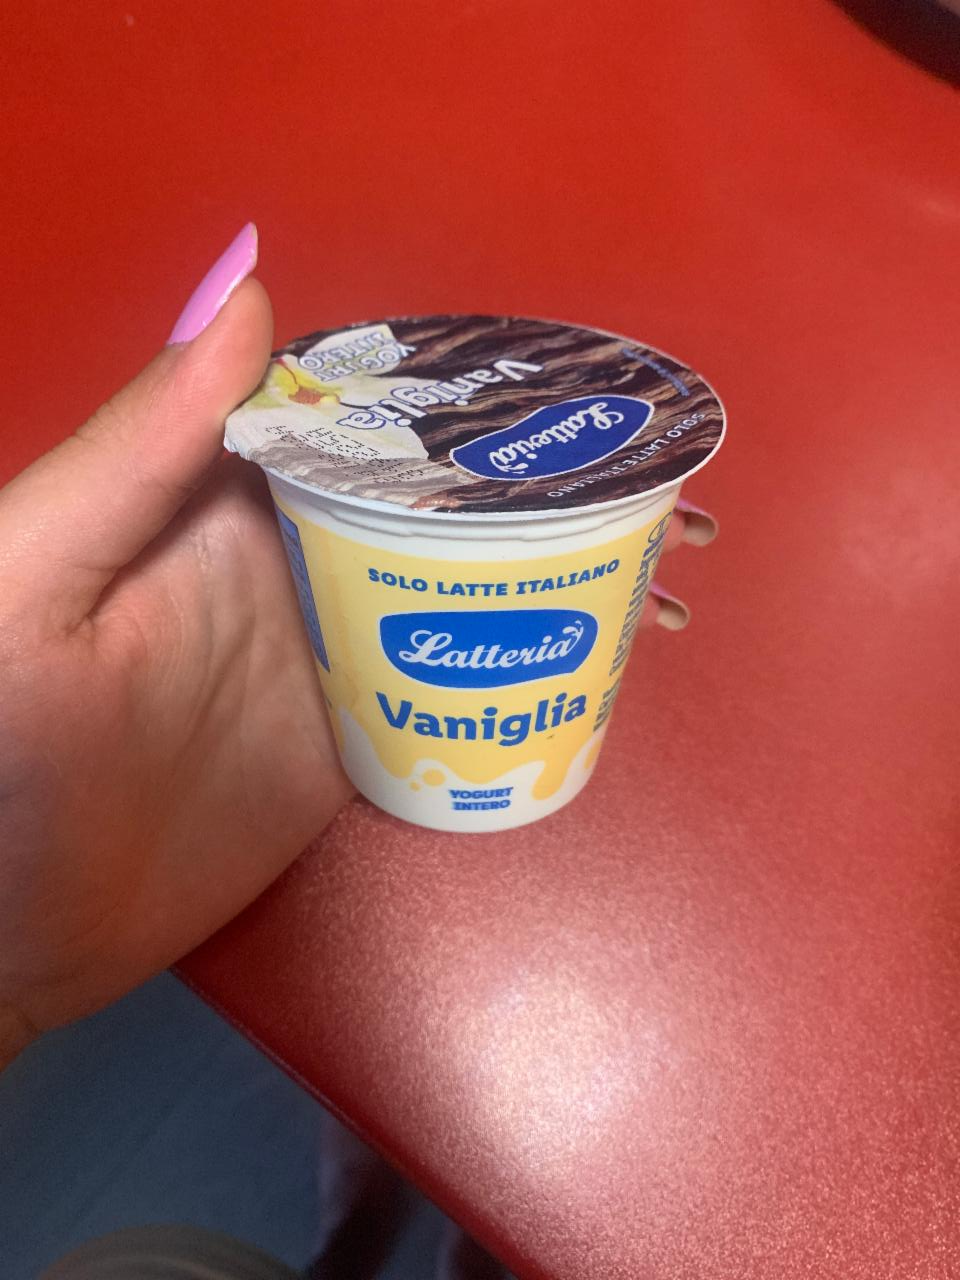 Fotografie - latteria vaniglia yogurt